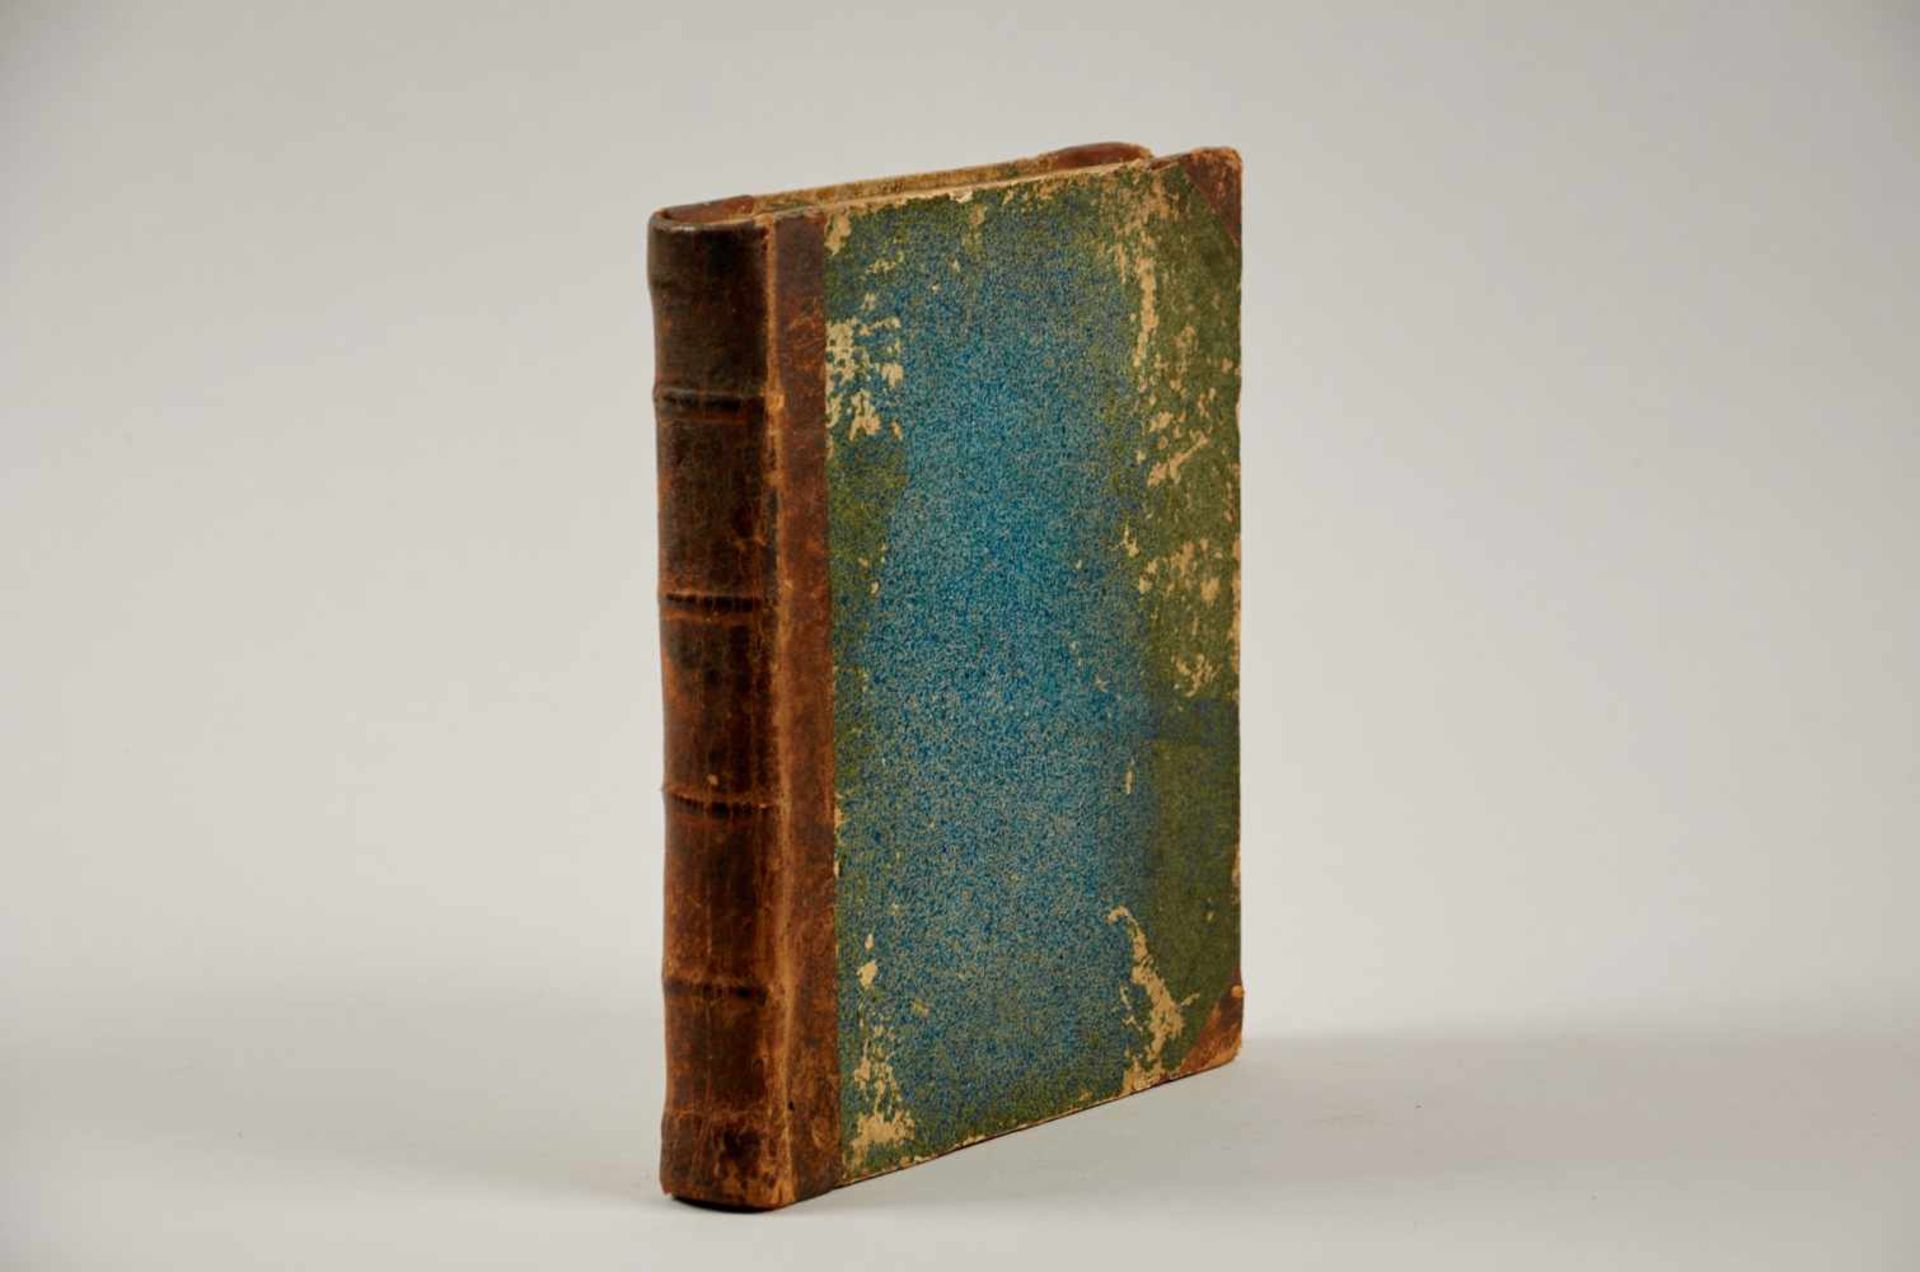 Handschriften - Rechenbuch.Deutsche Handschrift auf Papier. Dat. Heidelberg, 1810. 4ø. 304 S., 14